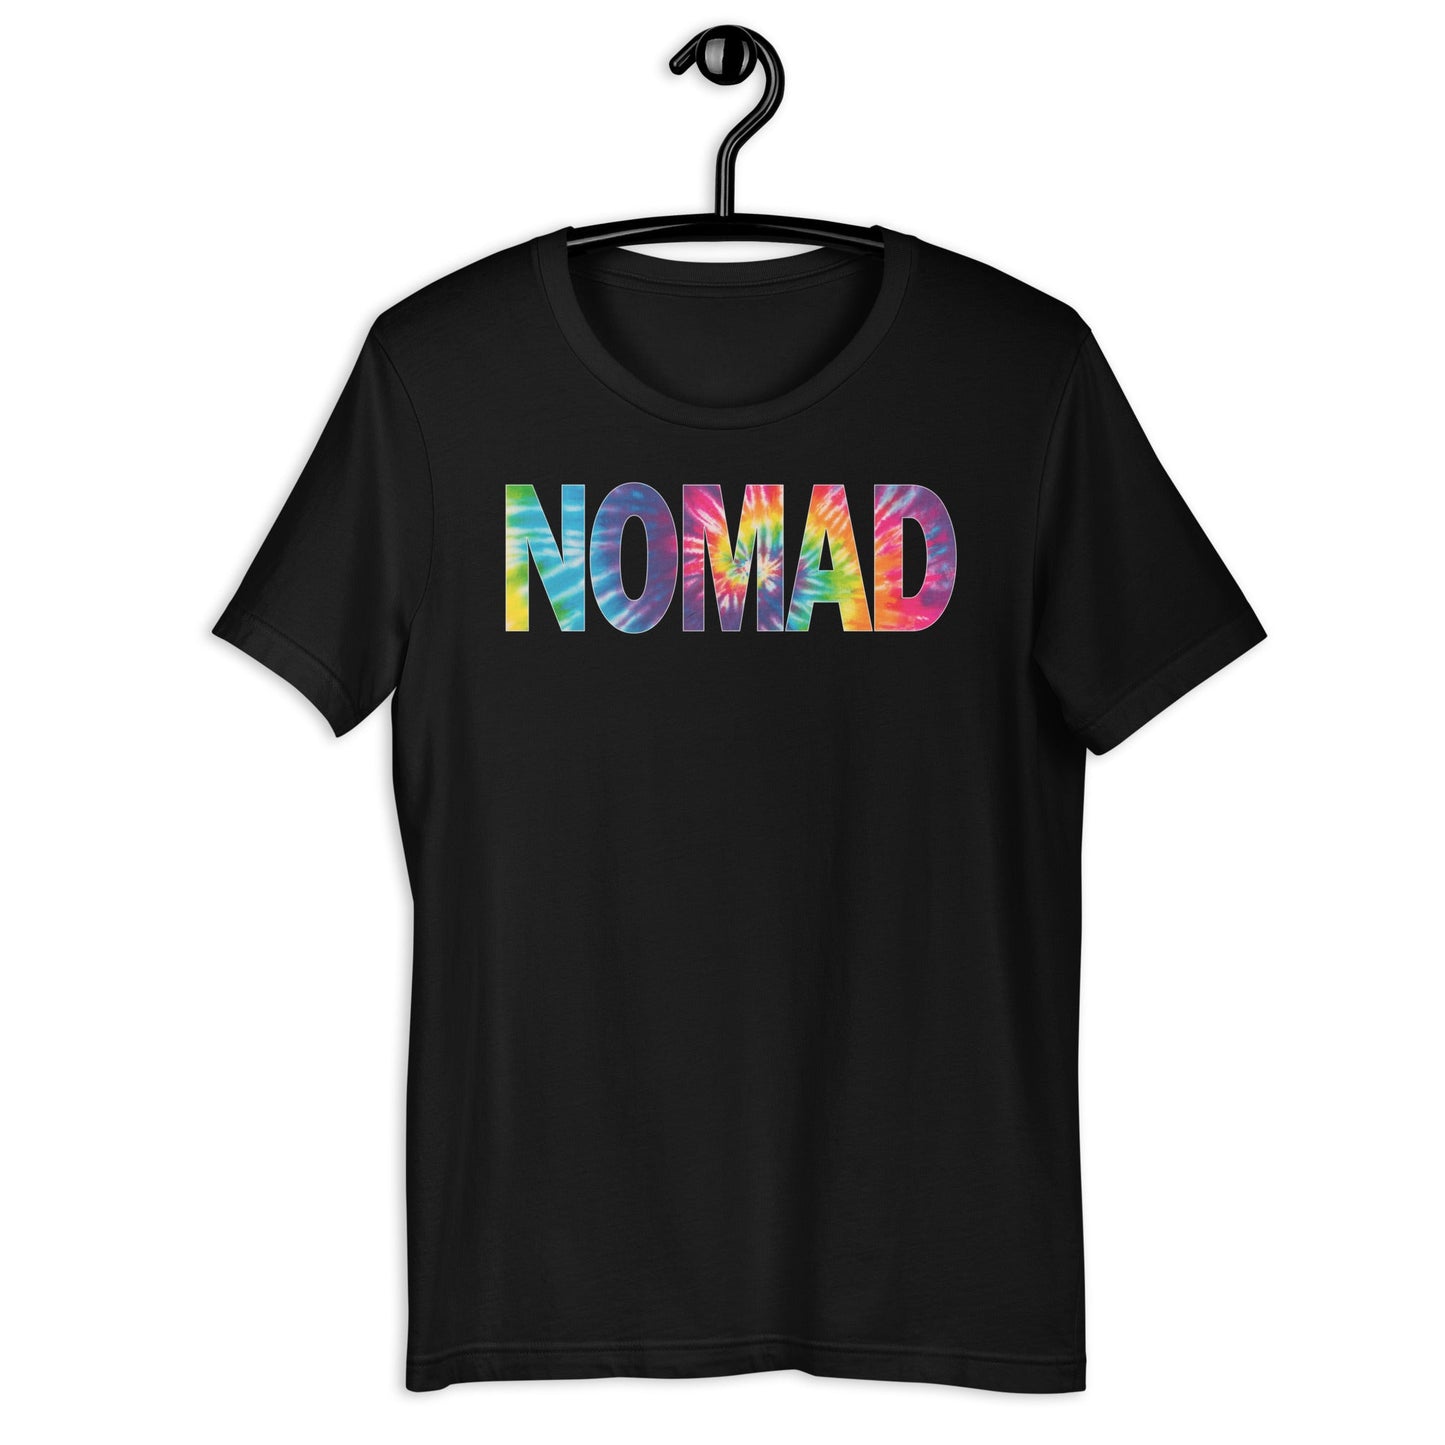 Nomad Unisex T-Shirt